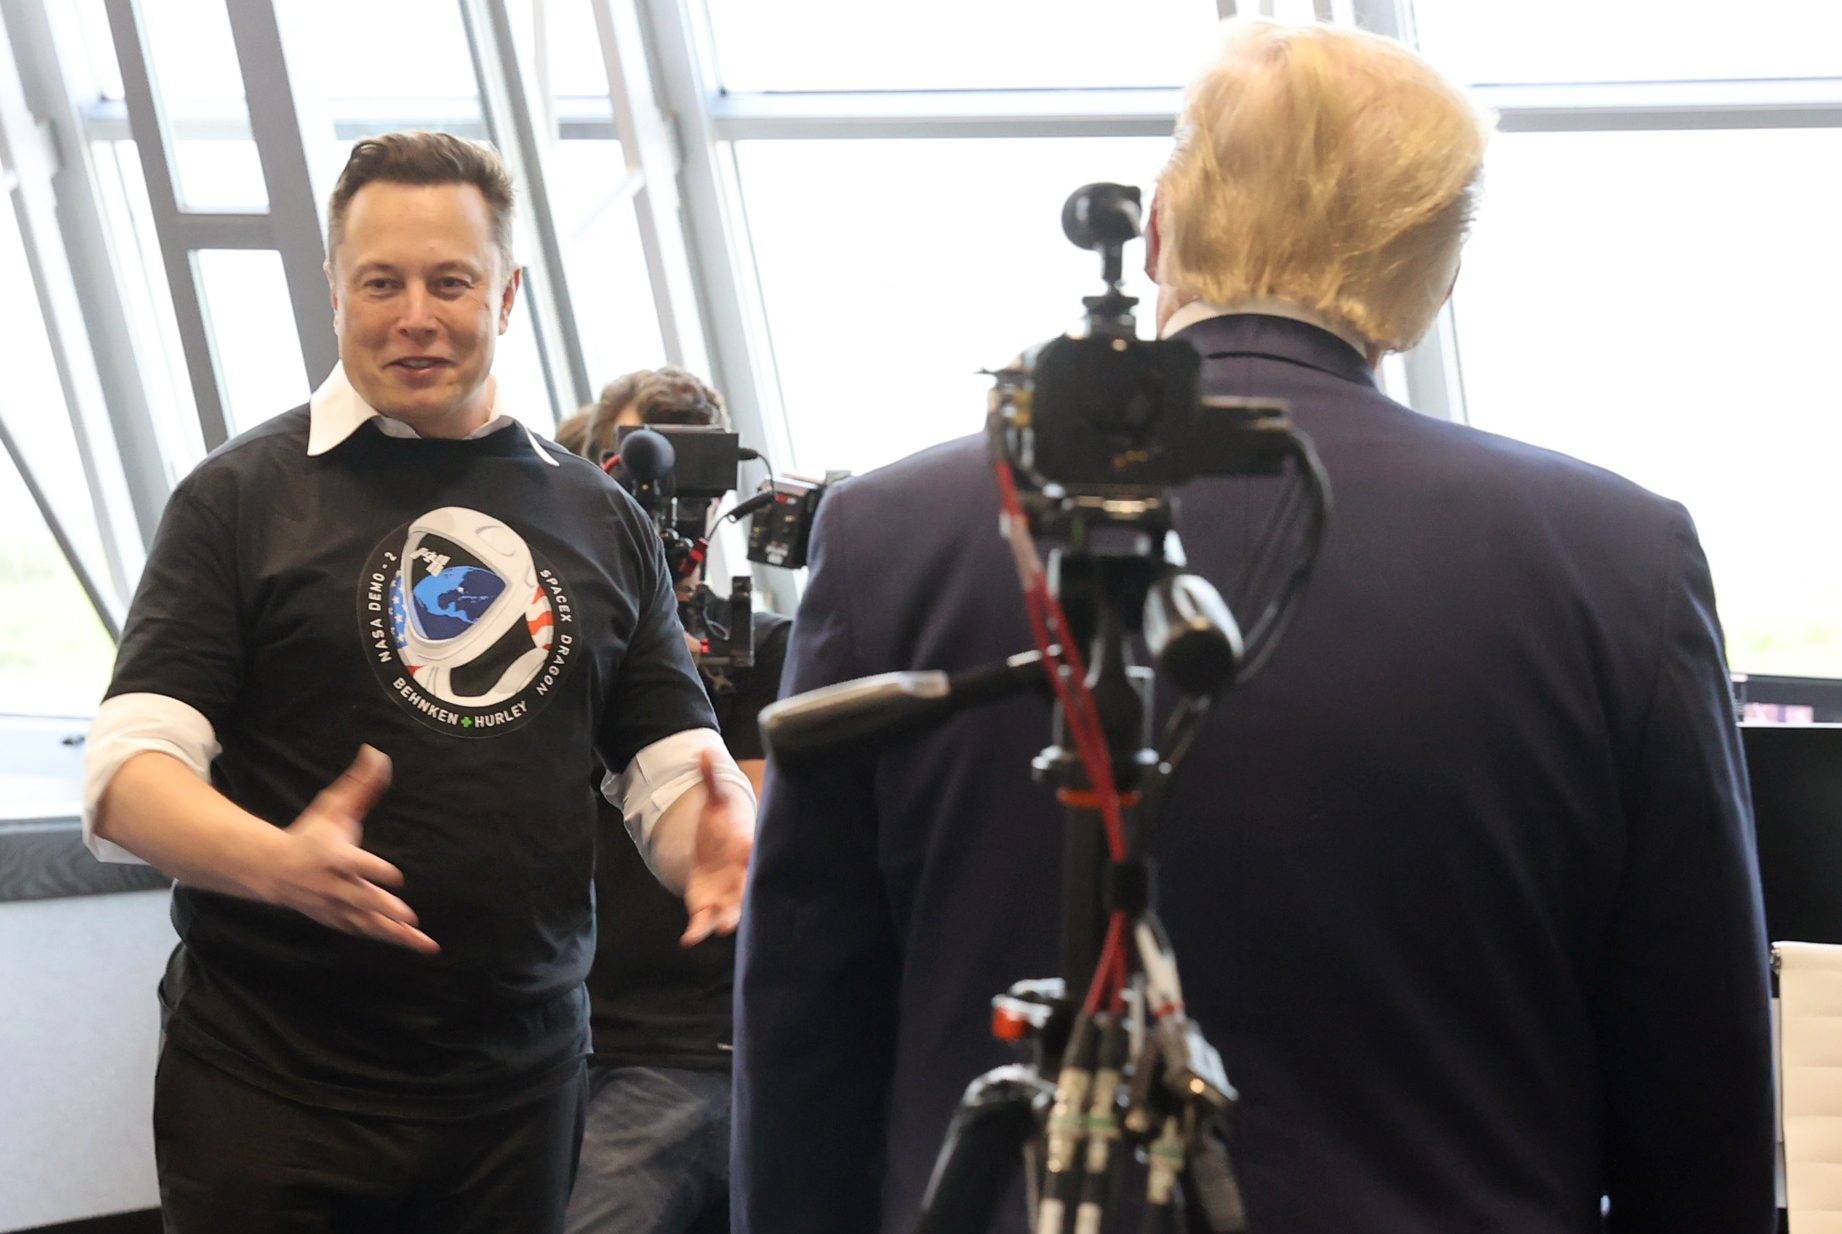 El Presidente de los Estados Unidos Donald Trump felicitó a Elon Musk, el dueño de Space X, luego del lanzamiento